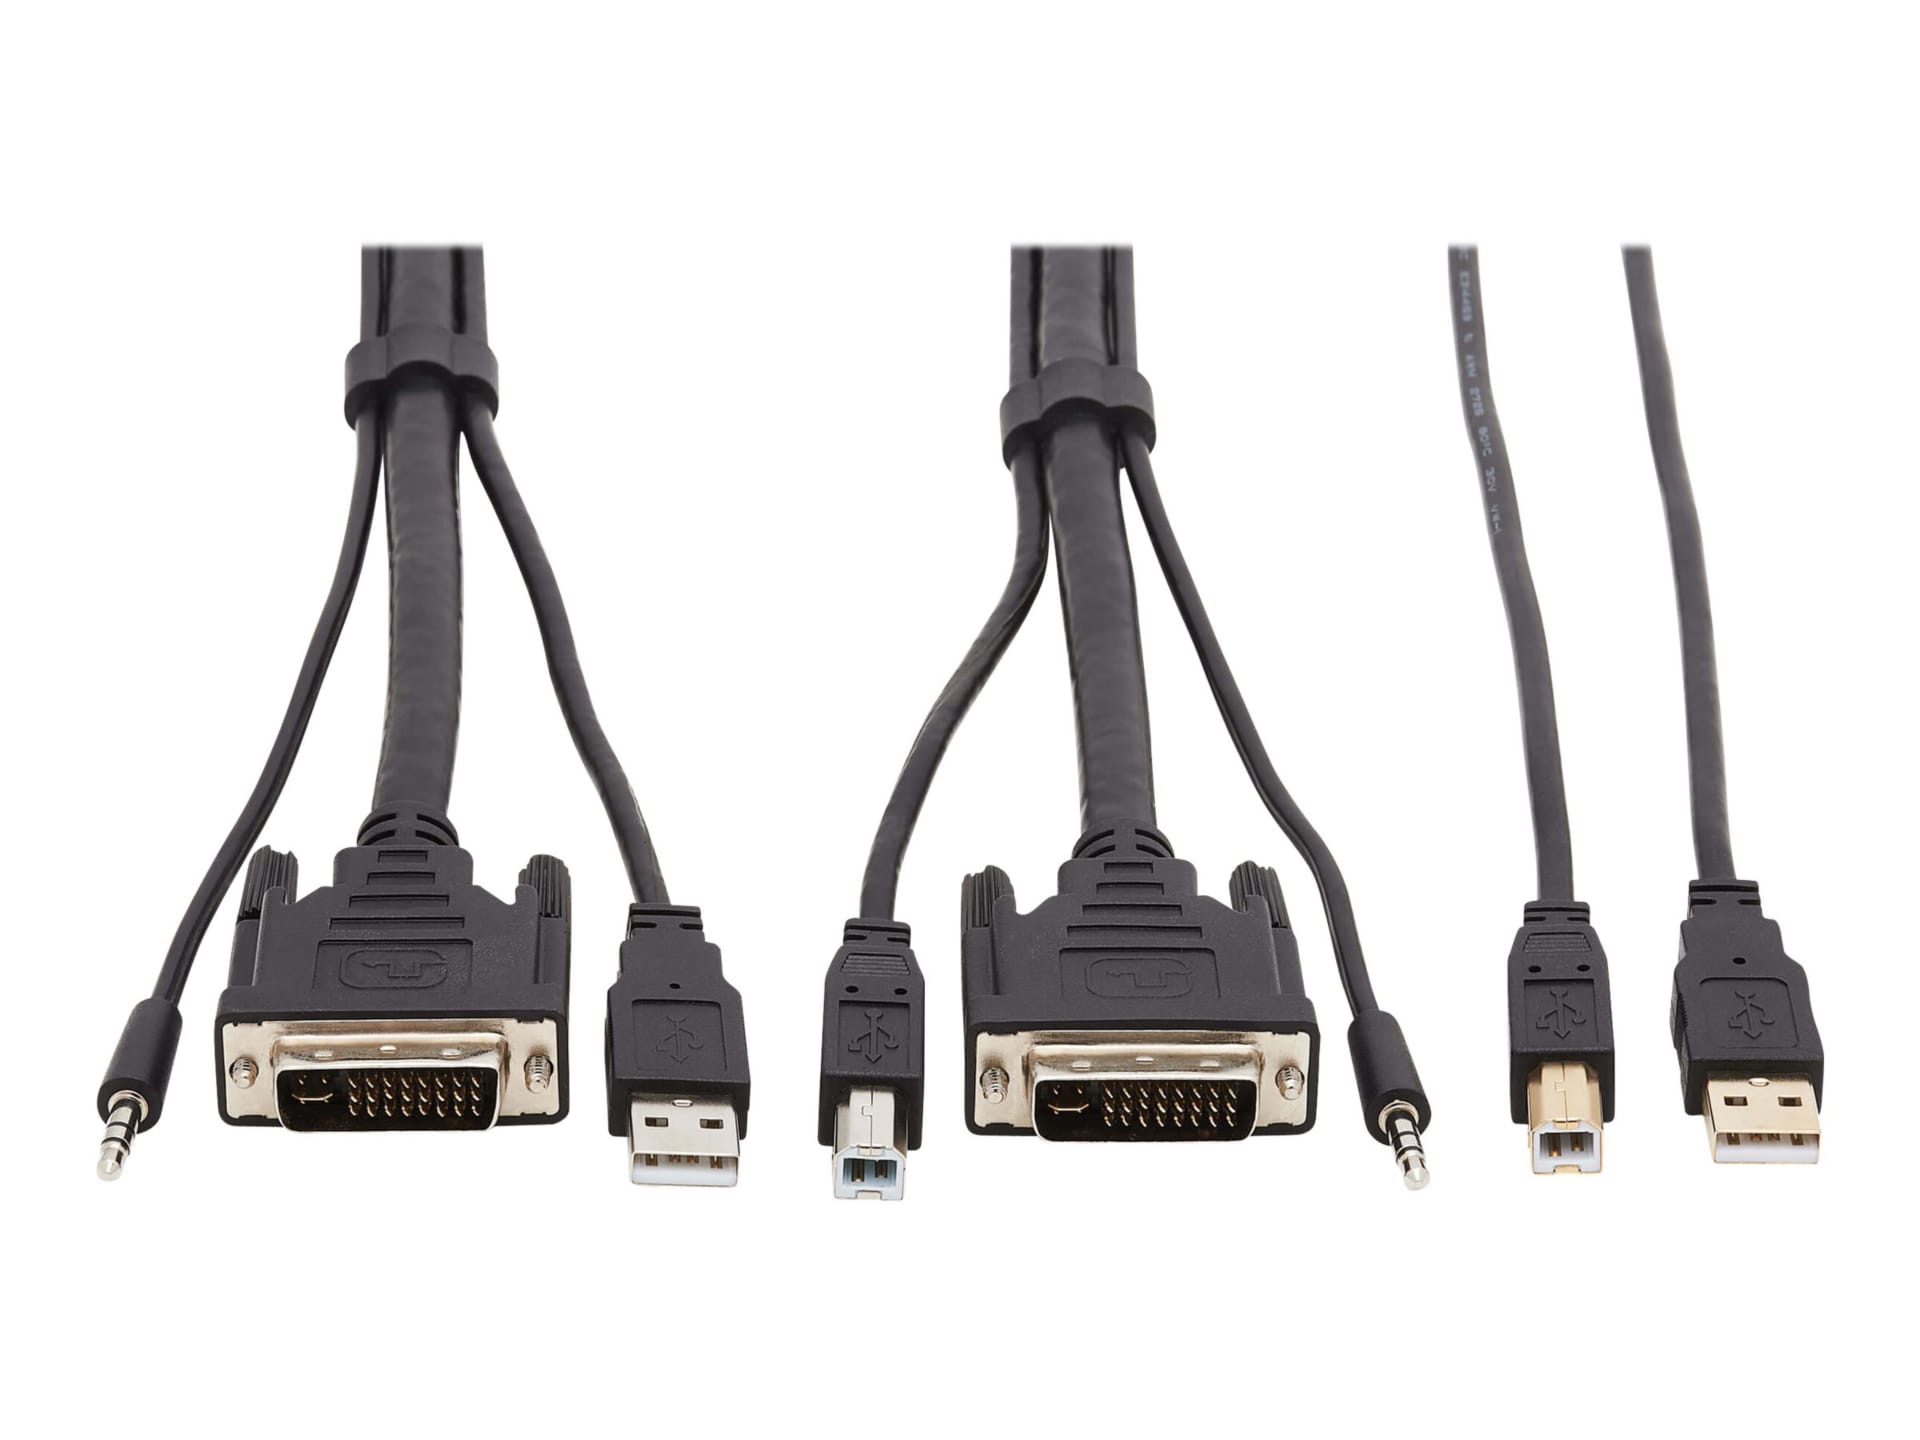 Tripp Lite DVI KVM Cable Kit - DVI, USB, 3.5 mm Audio (3xM/3xM) + USB (M/M), 1080p, 10 ft., Black - video / USB / audio